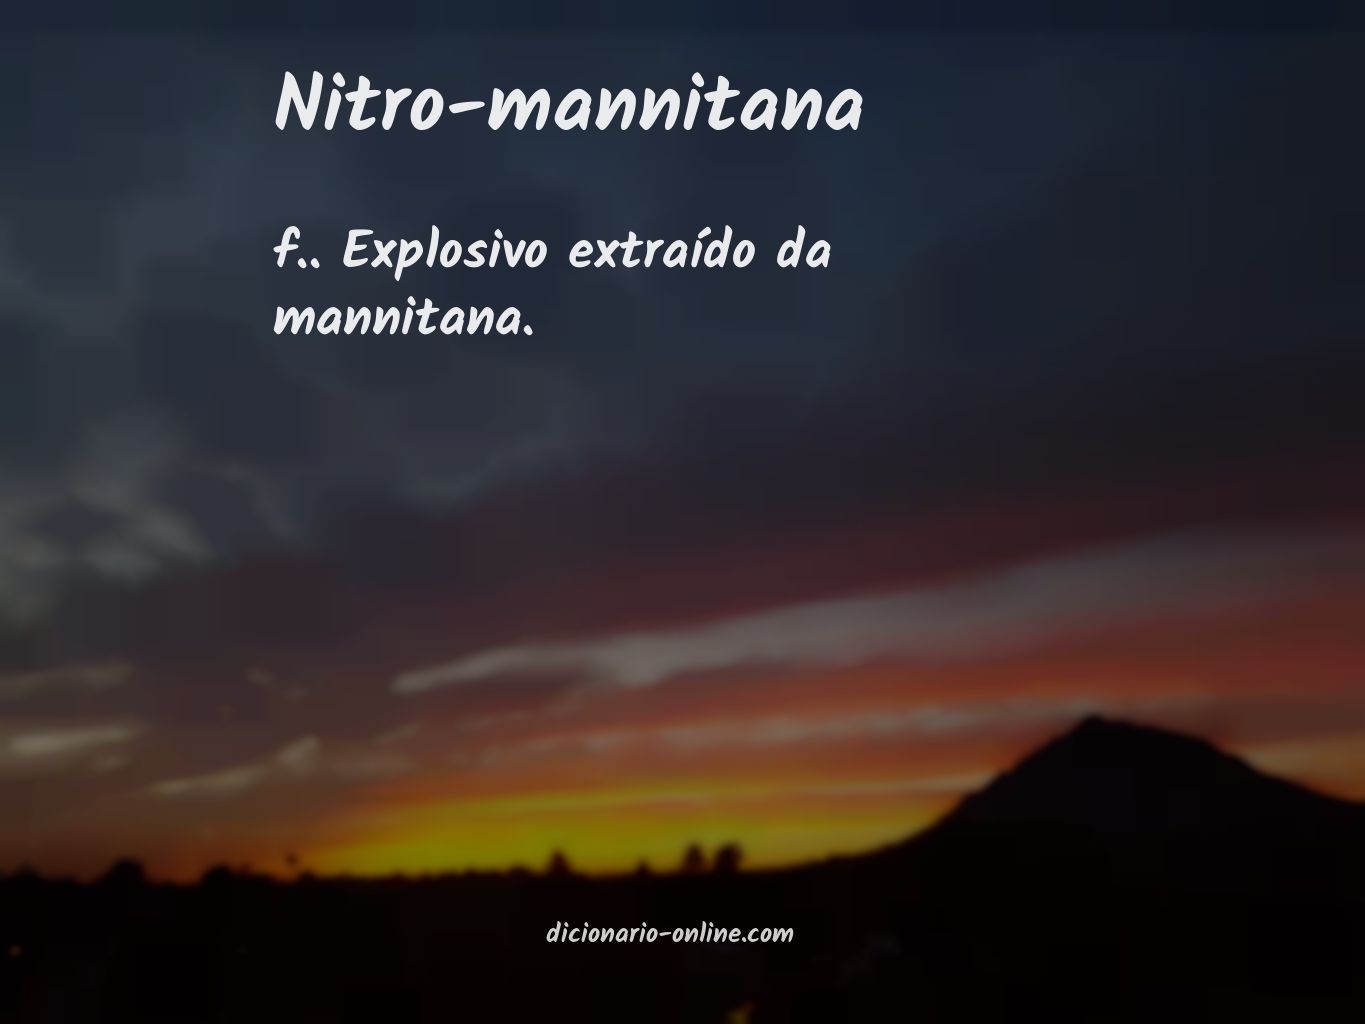 Significado de nitro-mannitana